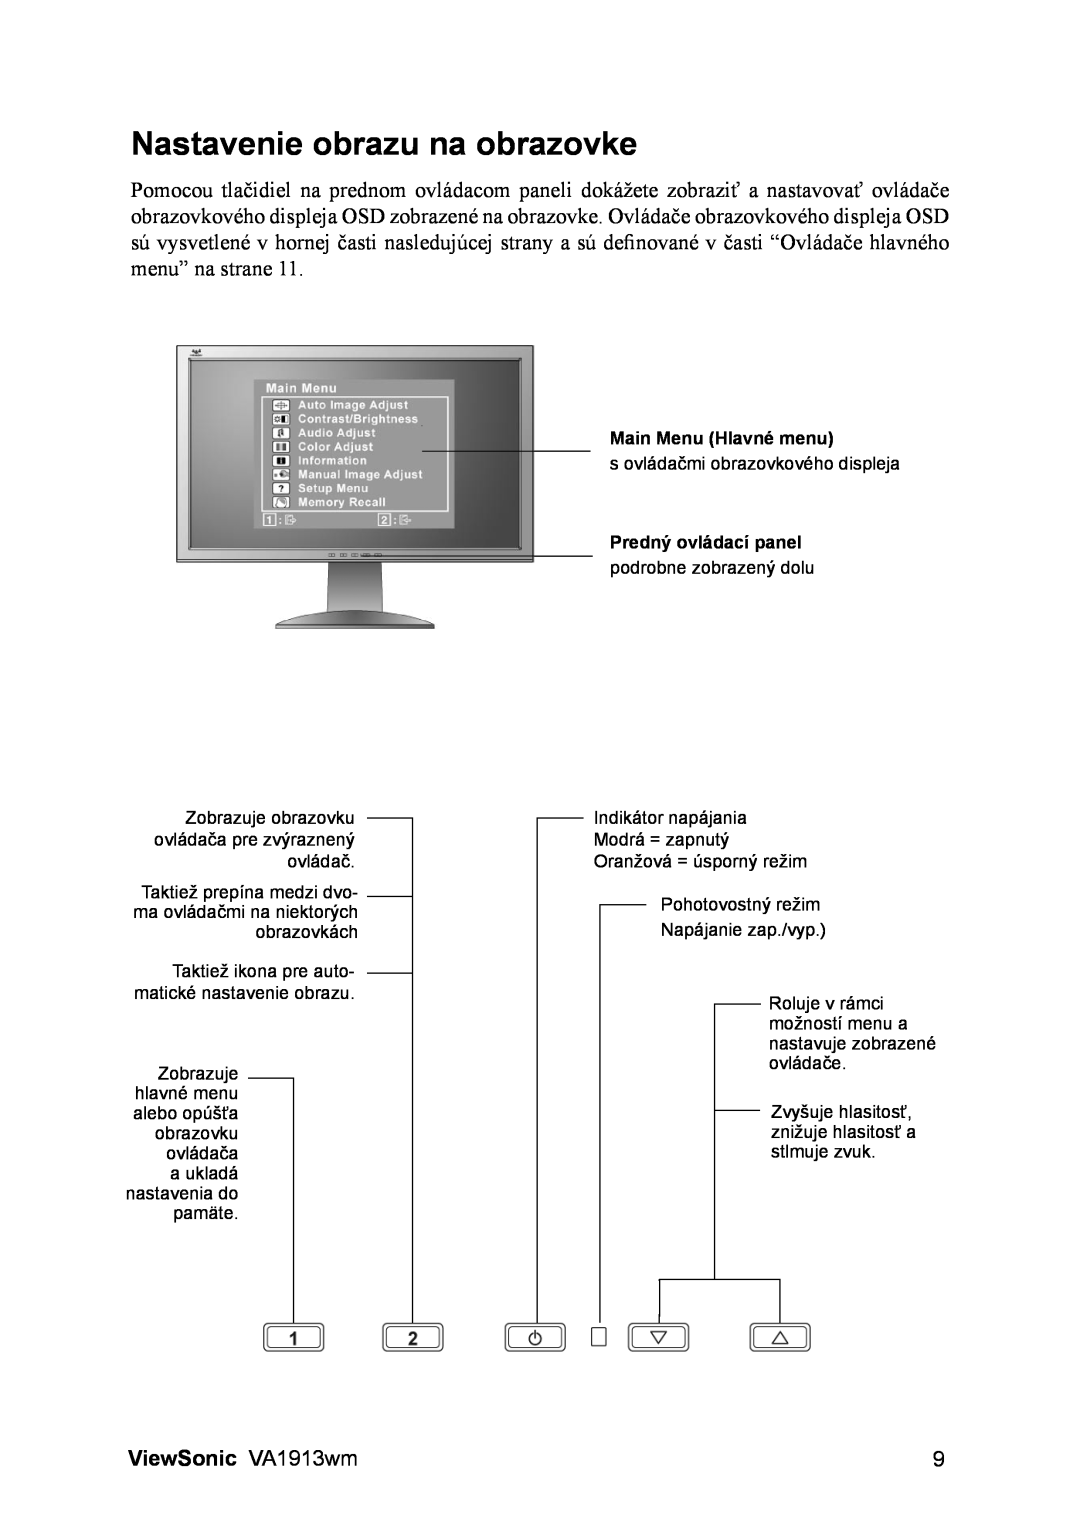 ViewSonic manual Nastavenie obrazu na obrazovke, ViewSonic VA1913wm, Main Menu Hlavné menu, Predný ovládací panel 